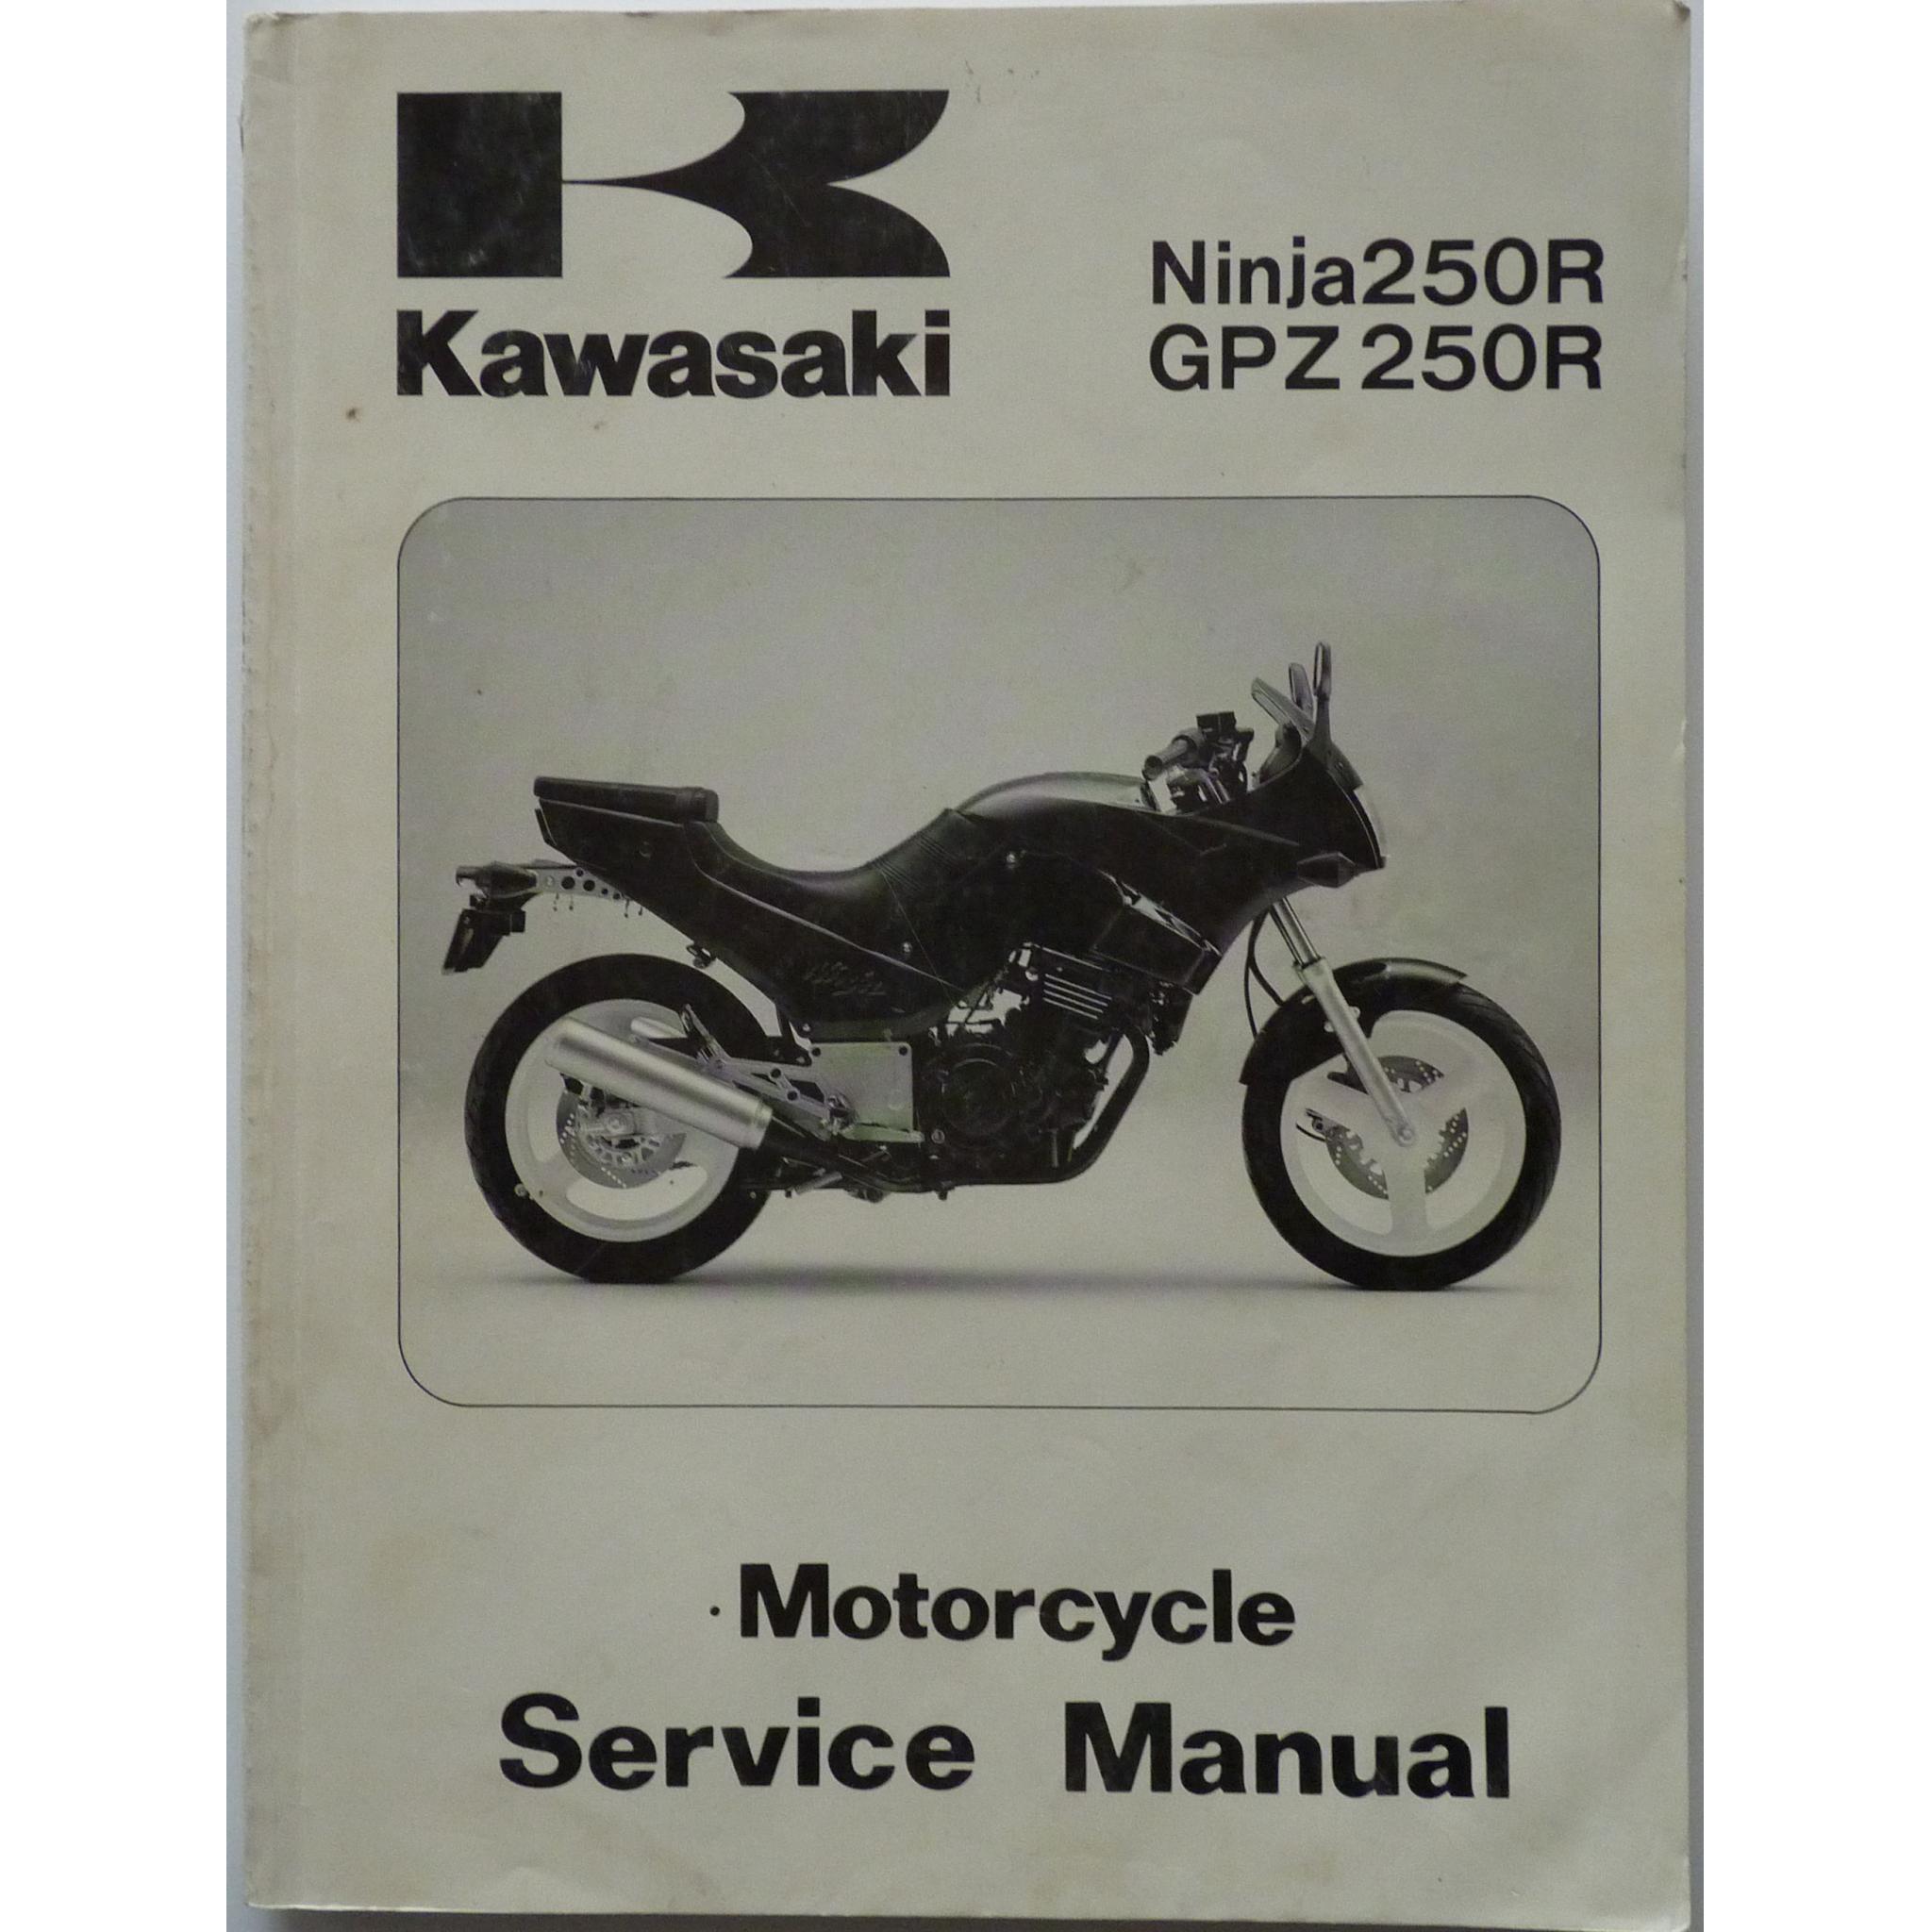 Kawasaki Ninja 250R and Motorcycle Service Manual